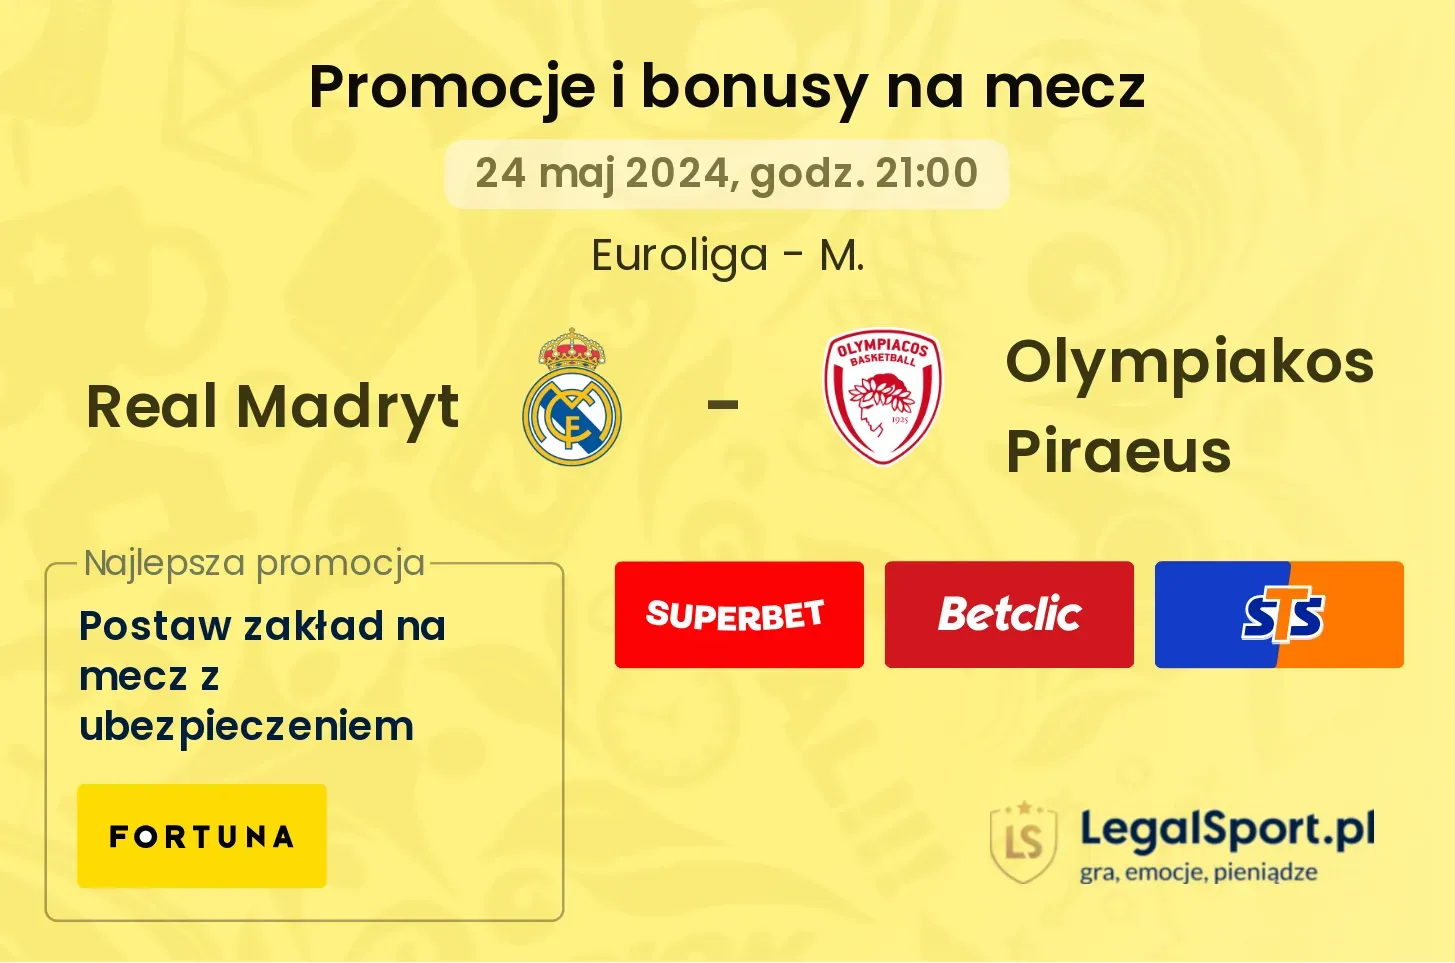 Real Madryt - Olympiakos Piraeus bonusy i promocje (24.05, 21:00)